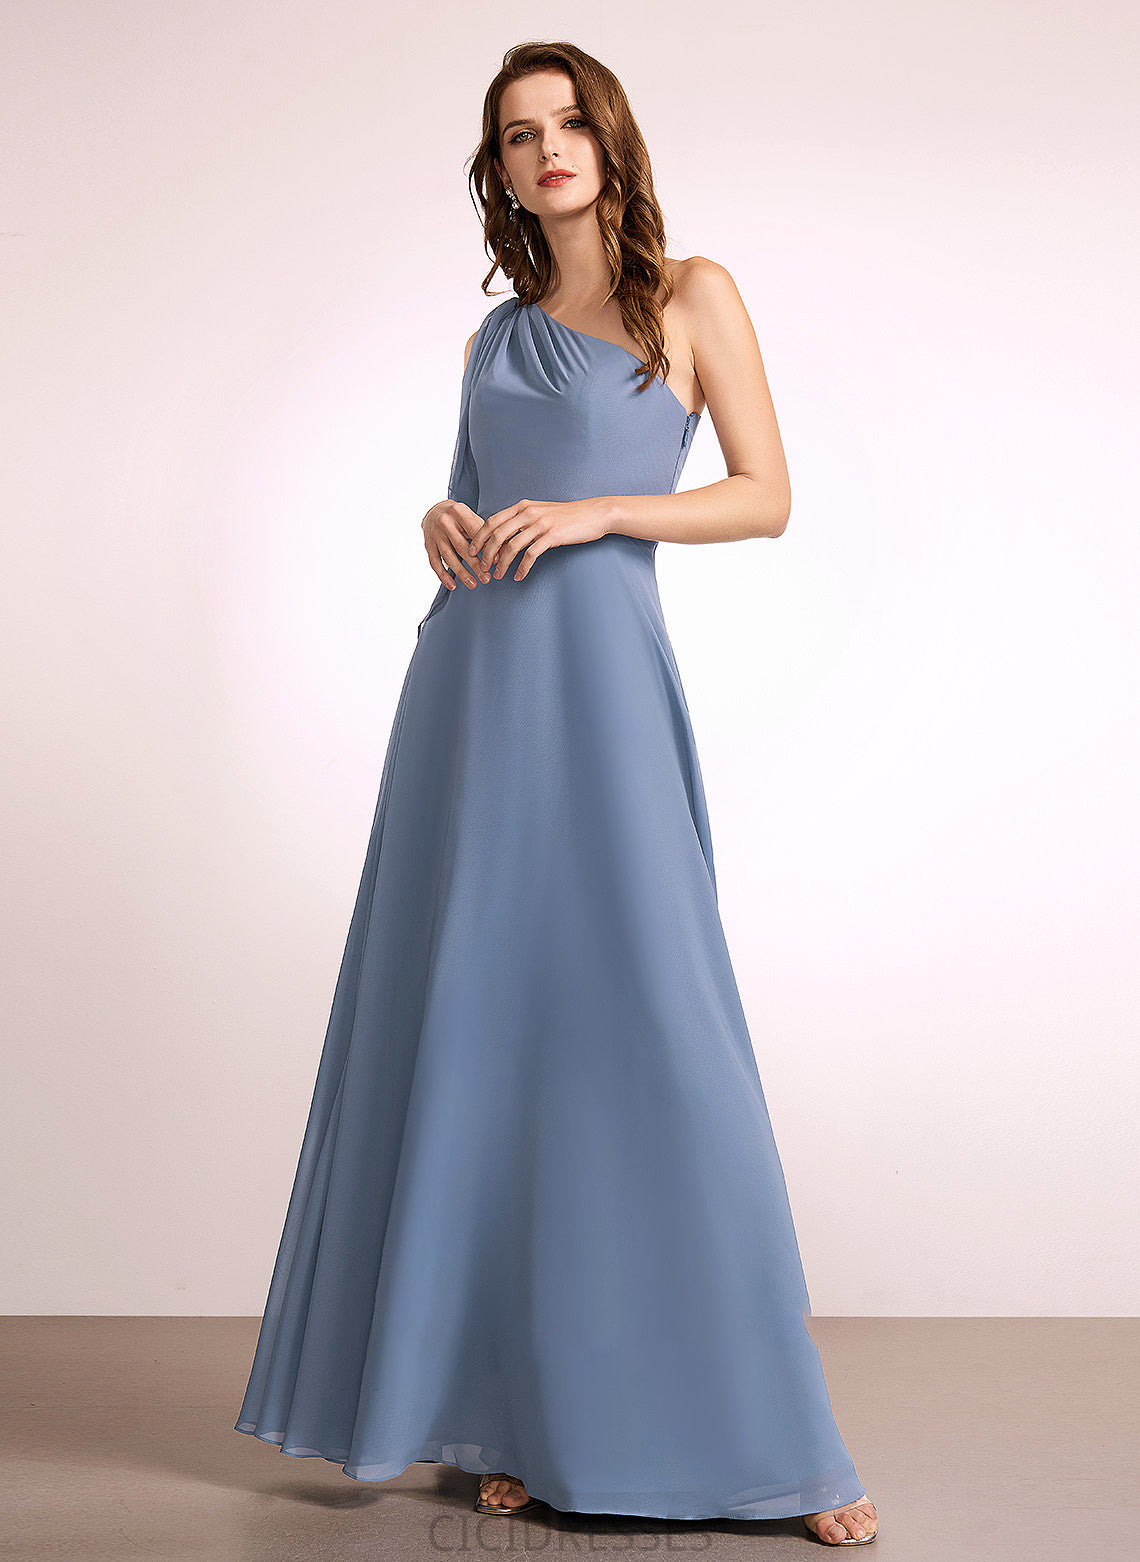 One-Shoulder Fabric Embellishment Neckline Bow(s) A-Line Length Silhouette Floor-Length Giuliana Floor Length A-Line/Princess Bridesmaid Dresses